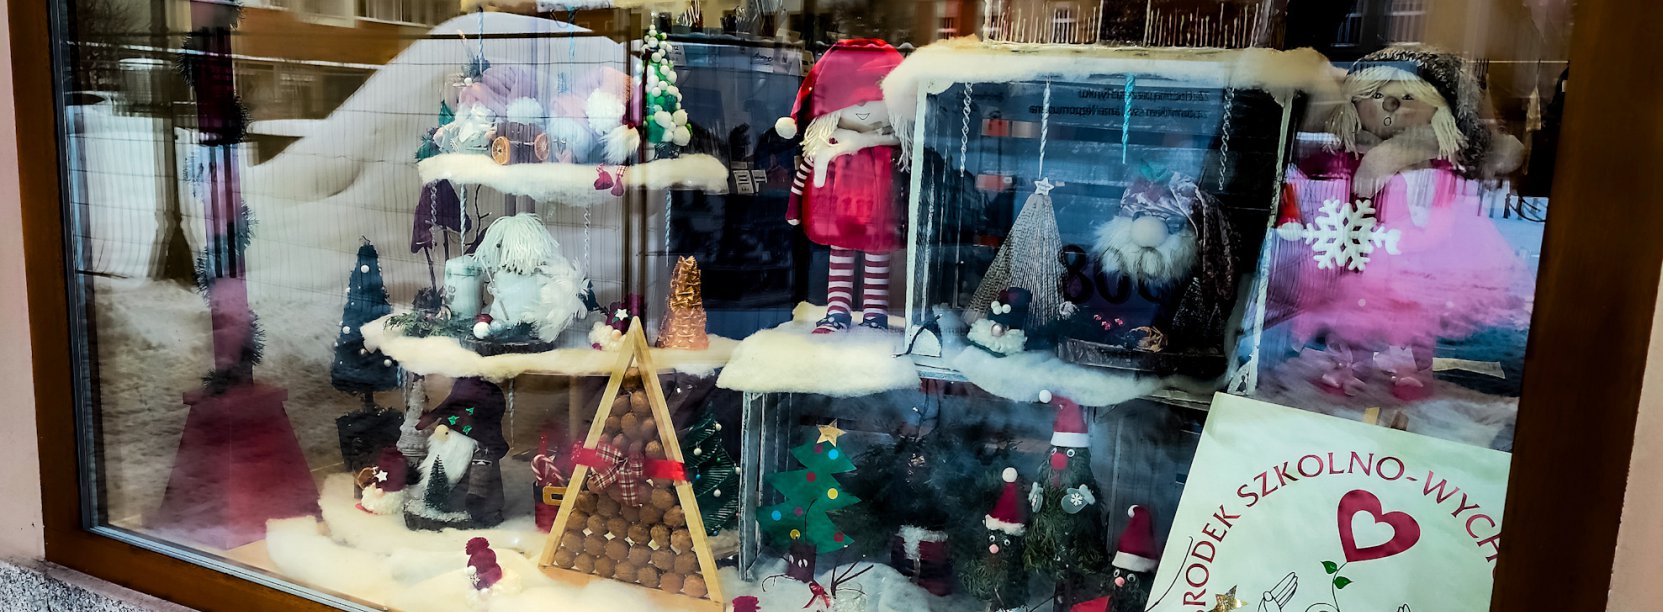 Okno Artystyczne z ozdobami świątecznymi w wykonaniu podopiecznych Specjalnego Ośrodka Szkolno-Wychowawczego w Dzierżoniowie